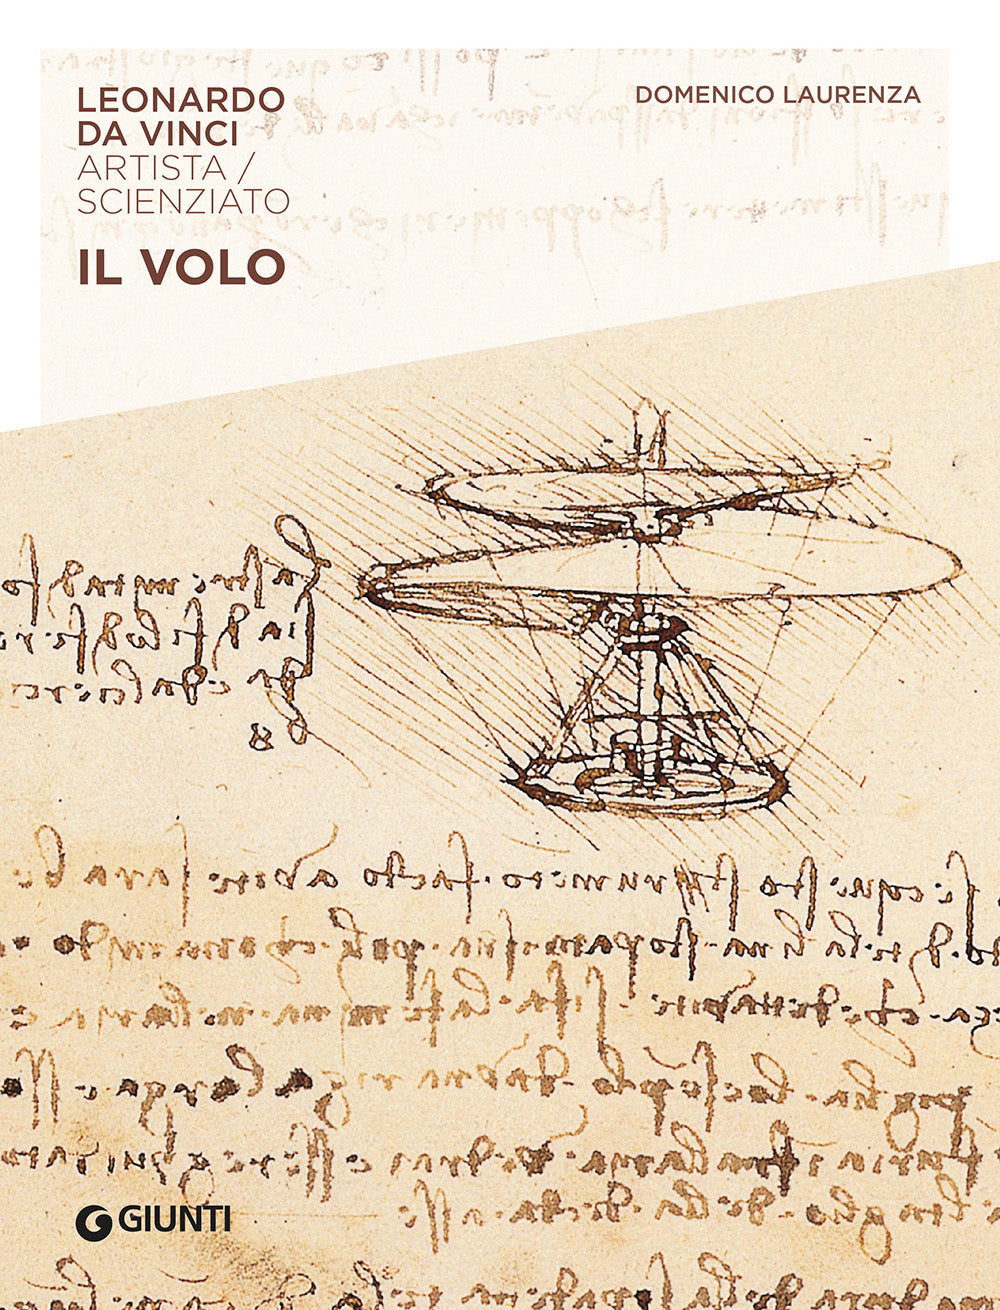 Il volo. Leonardo da Vinci. Artista / scienziato